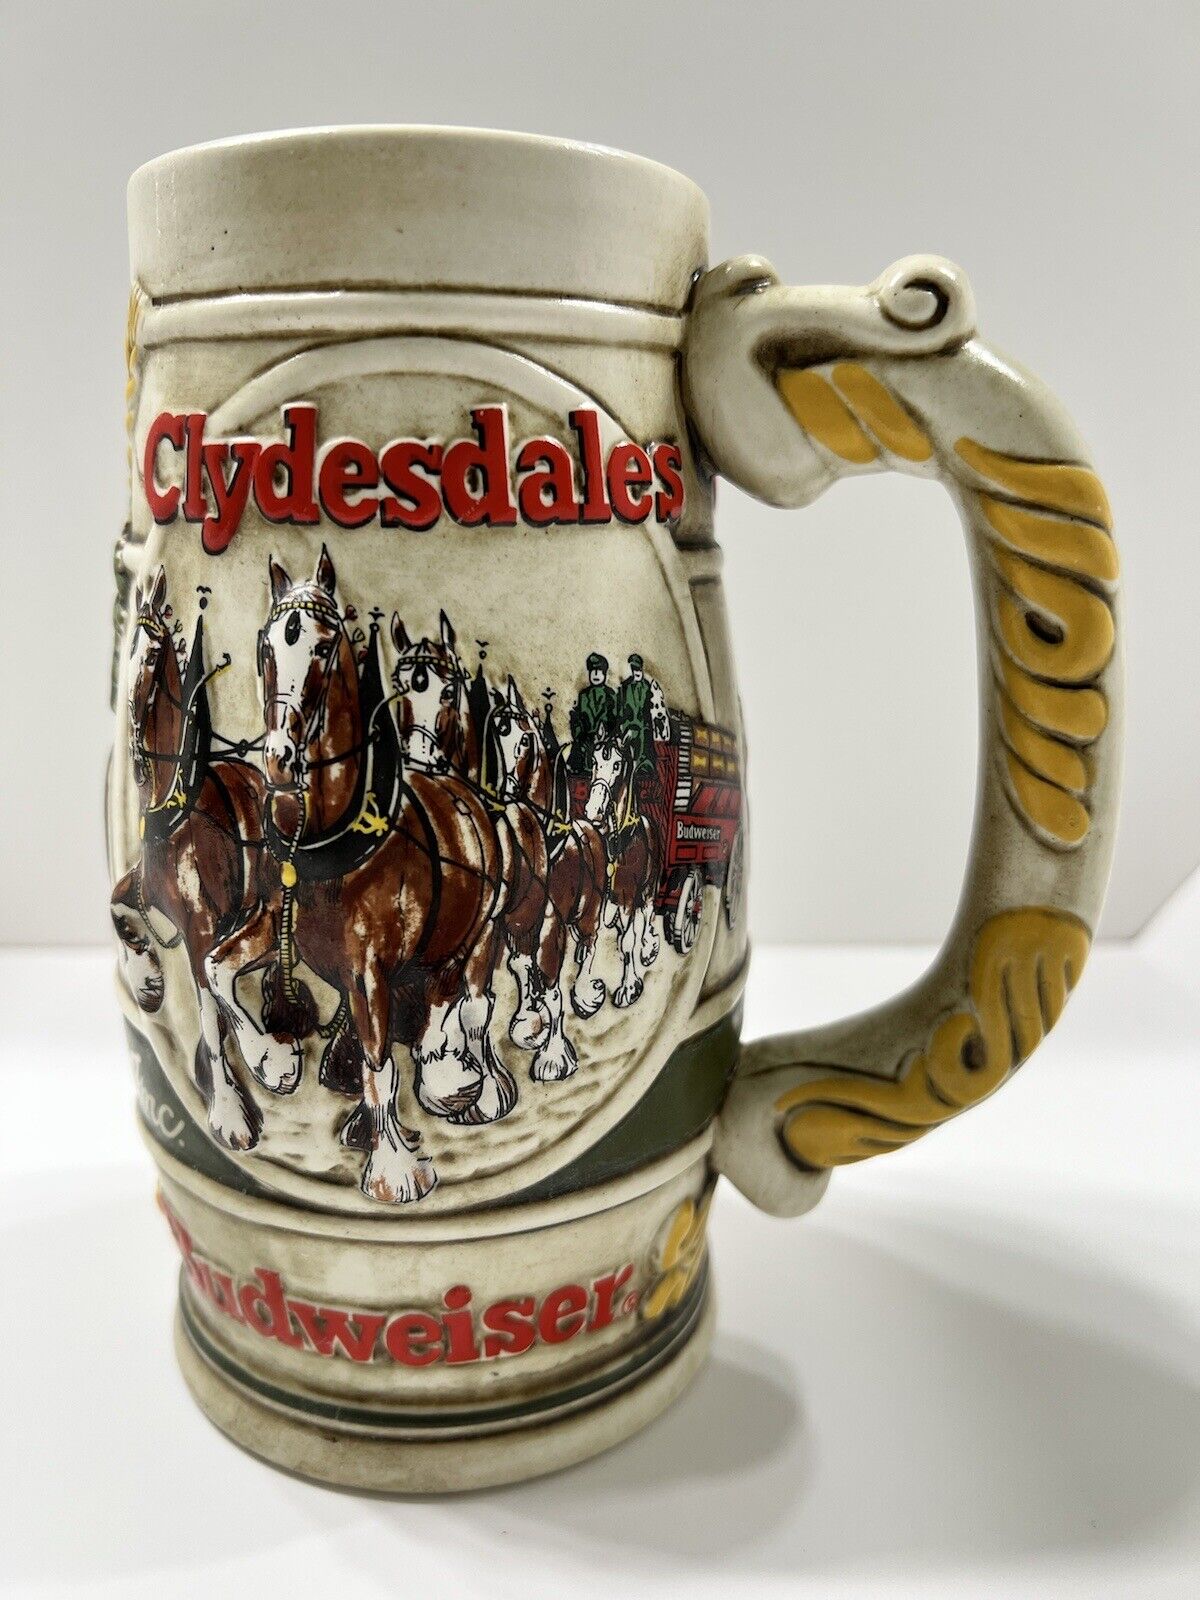 Vintage Budweiser Clydesdales 1983 Large Beer Stein Cup Mug Ceramarte Brazil